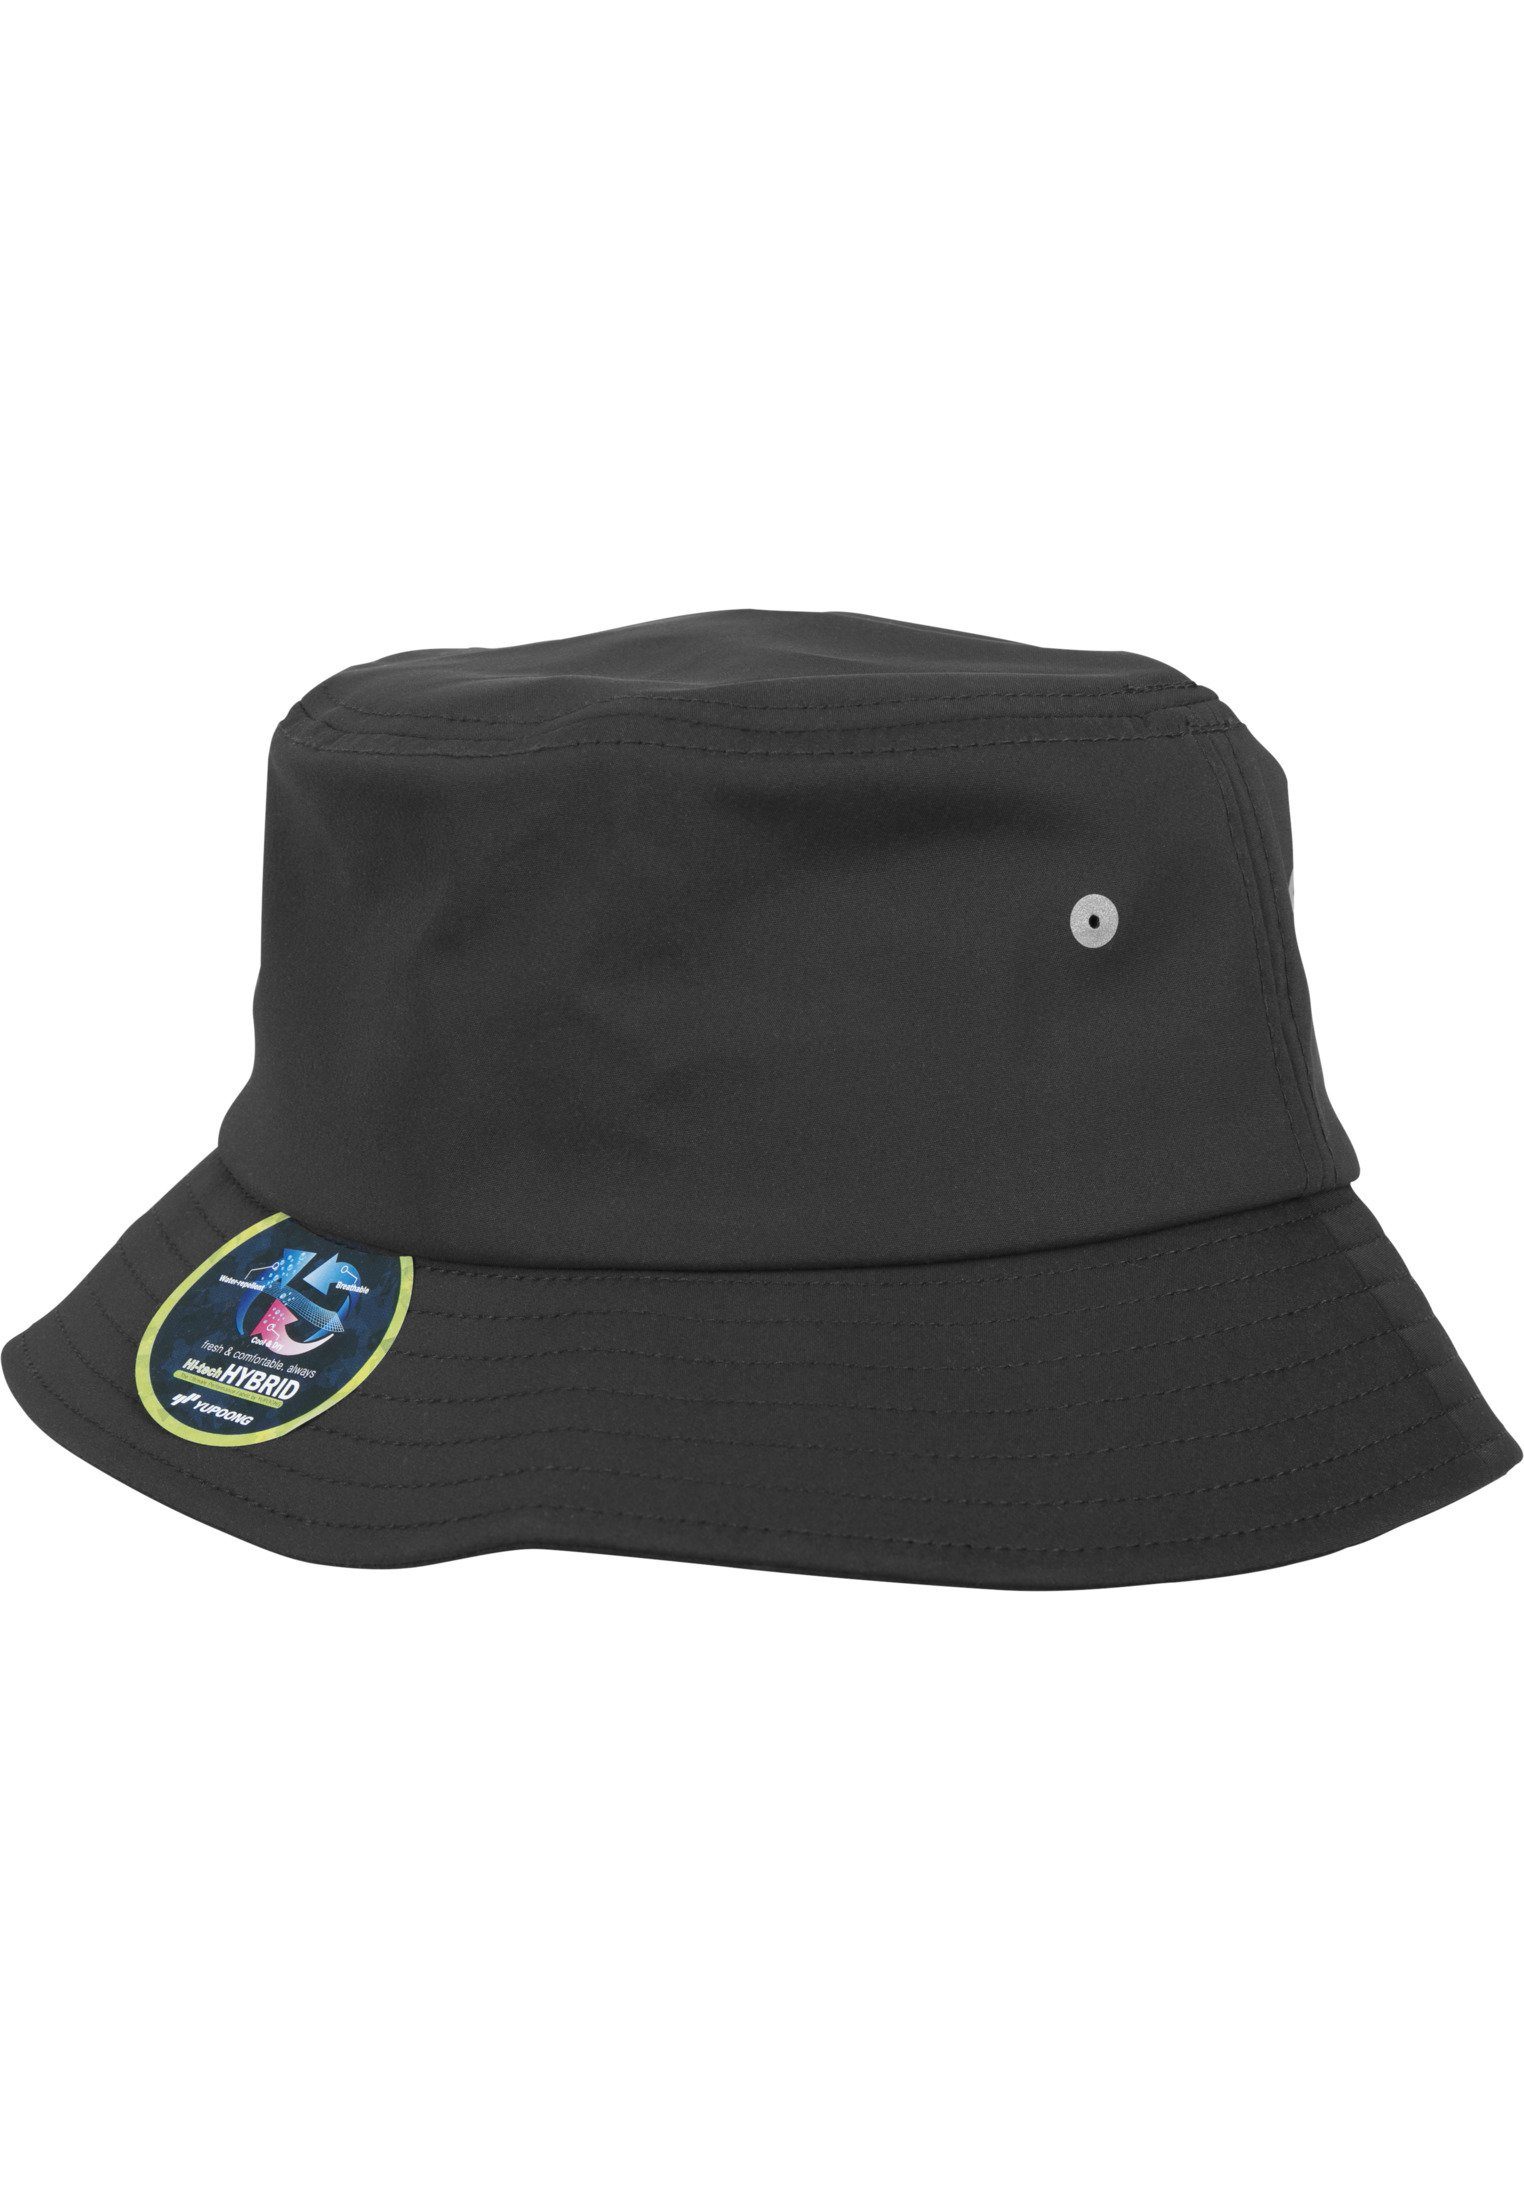 Cap Hat Bucket Bucket Flex Hat Flexfit Nylon